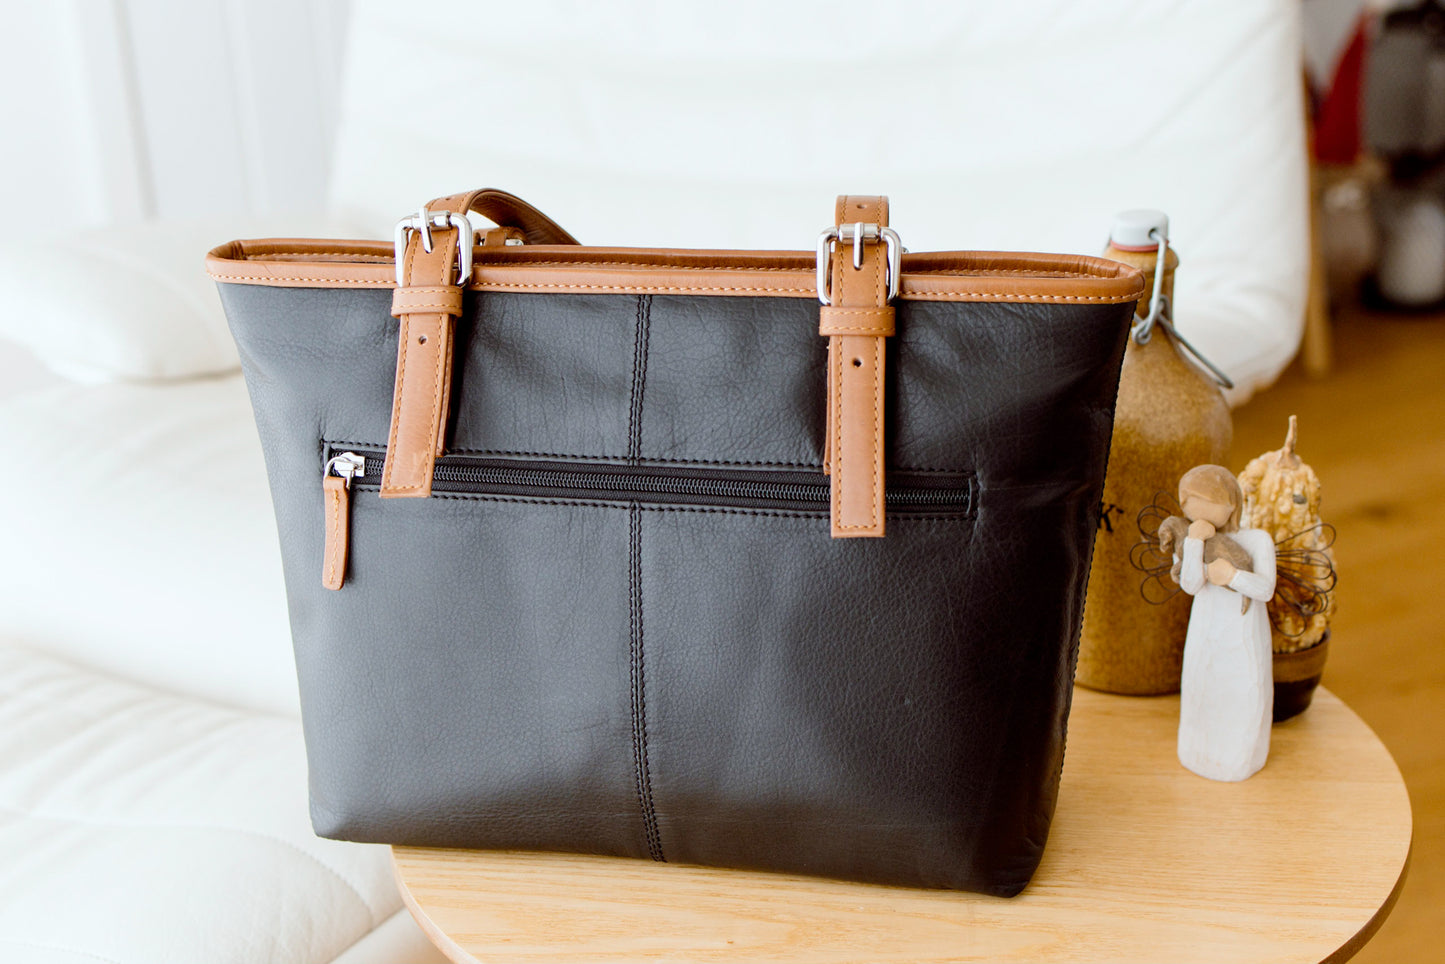 GT-H82: G&T Full-grain Leather Shopper, Shoulder Bag, Handbag with Adjustable Shoulder Strap